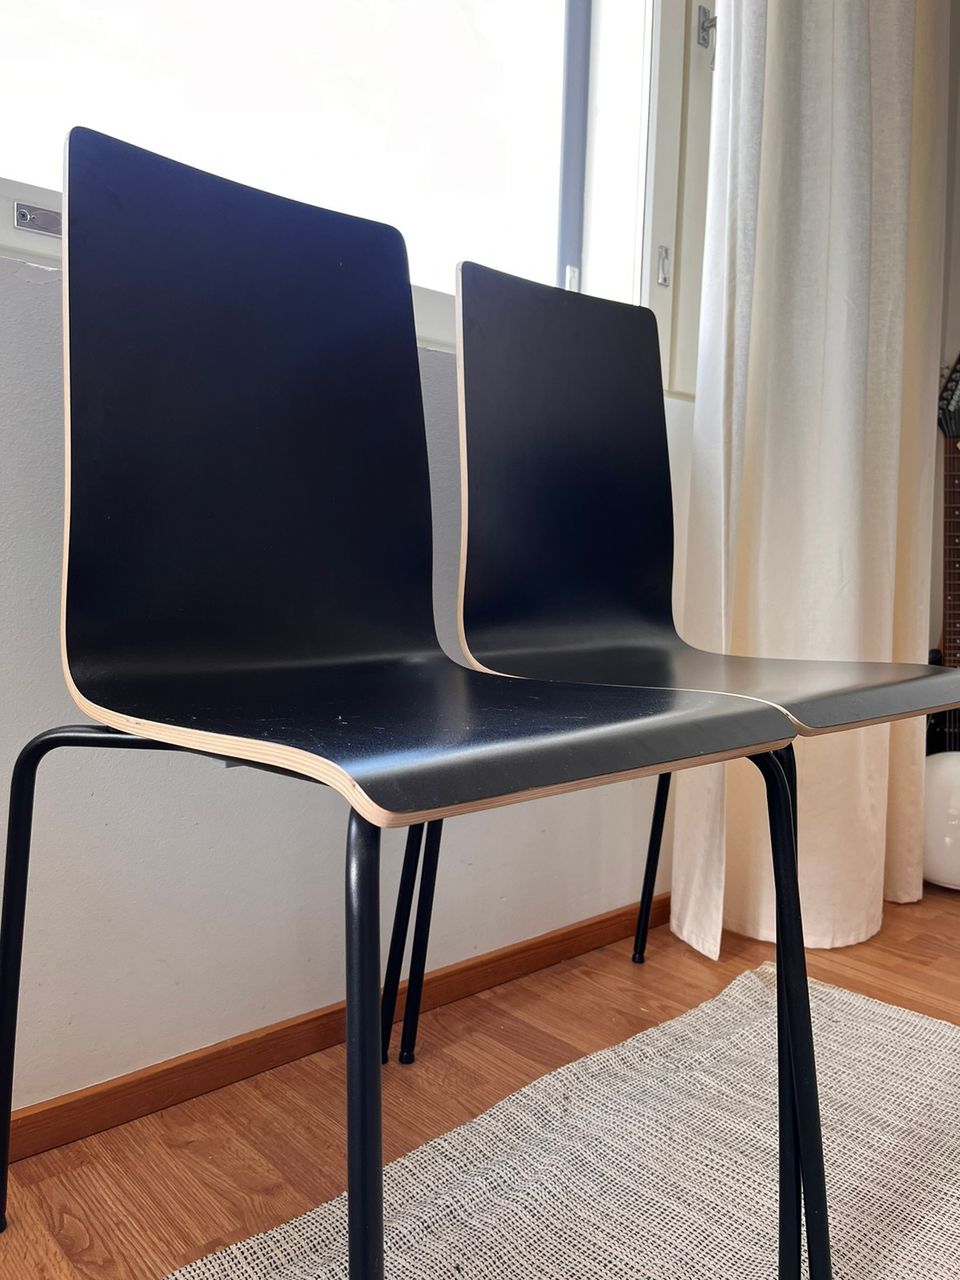 2kpl Ikea Martin tuoleja